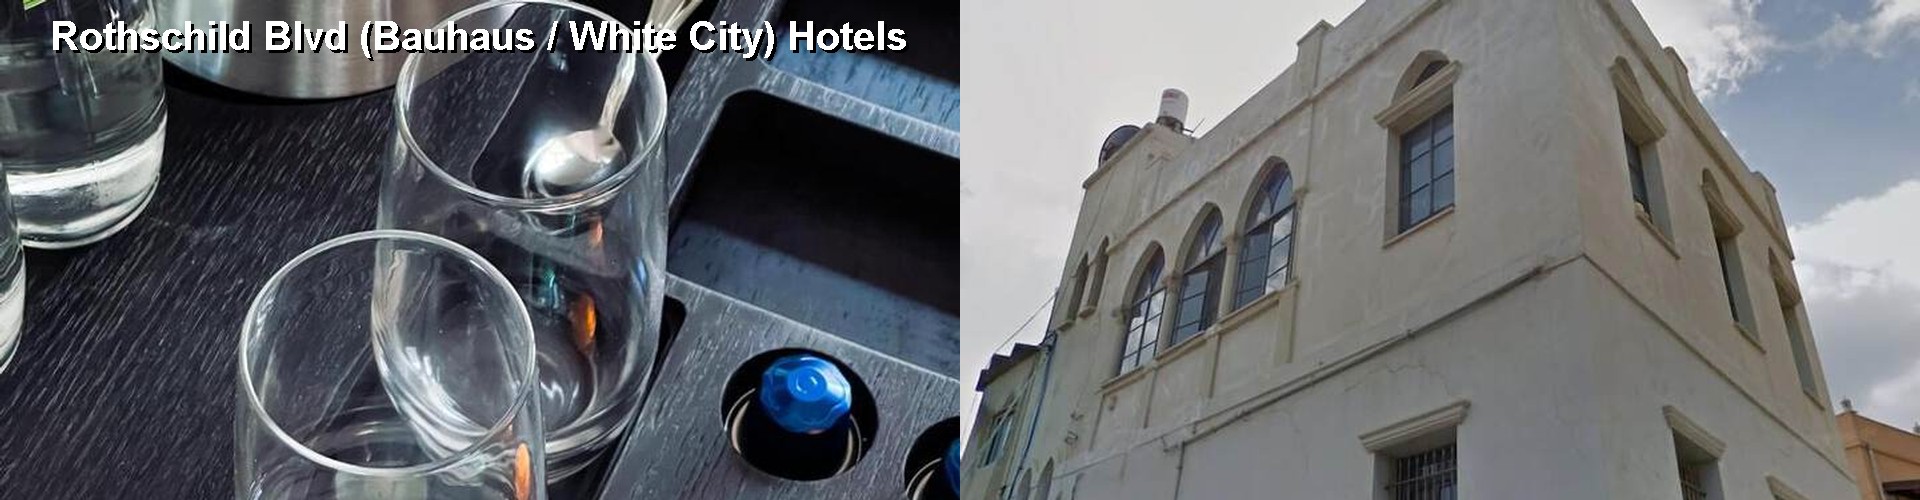 5 Best Hotels near Rothschild Blvd (Bauhaus / White City)